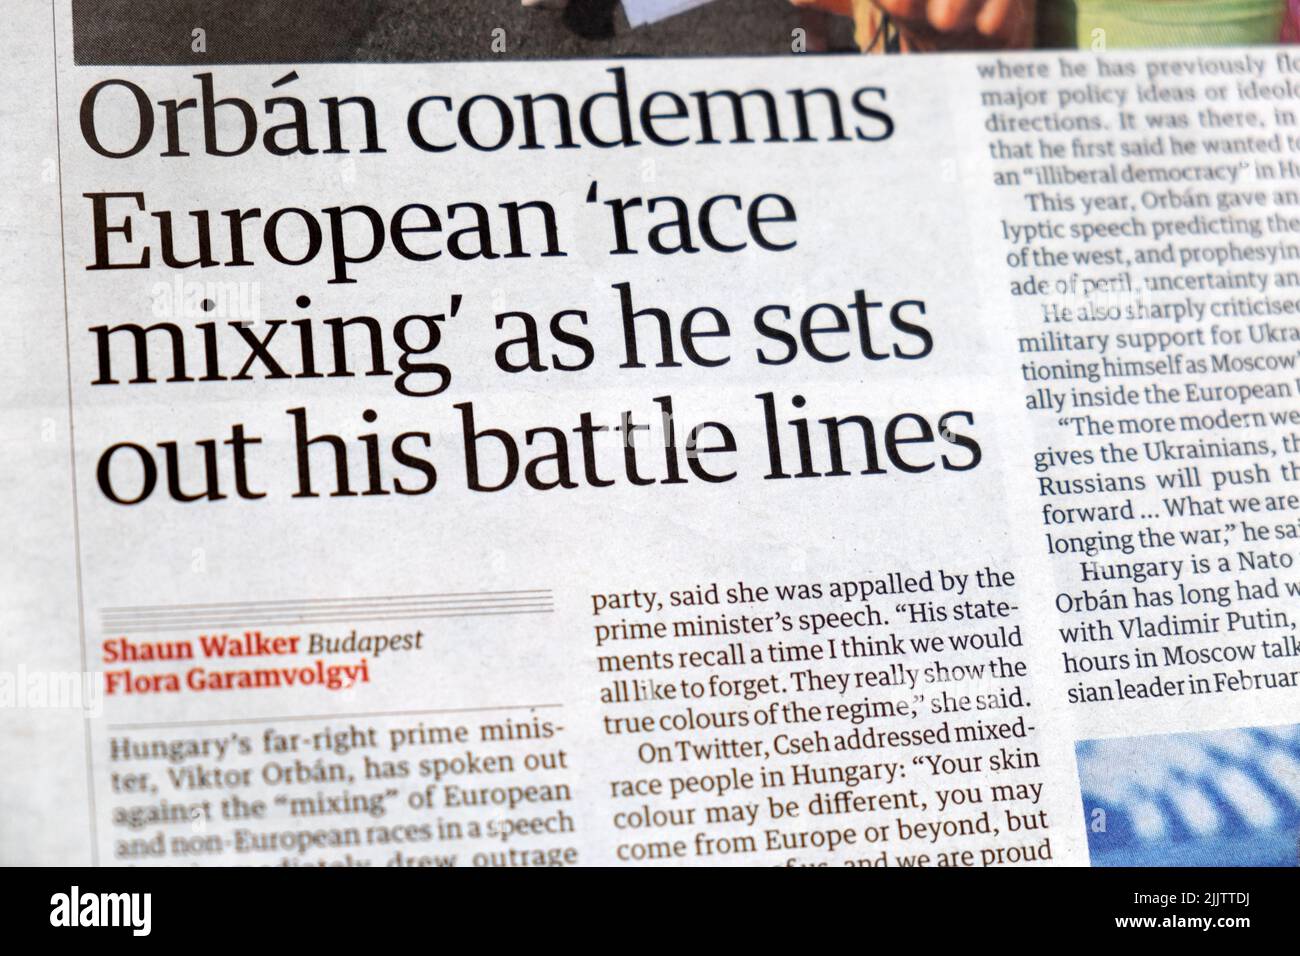 Hungría El primer ministro Viktor 'Orban condena la 'mezcla de razas en Europa mientras establece sus líneas de batalla' titular del periódico Guardian 25 de julio de 2022 Reino Unido Foto de stock